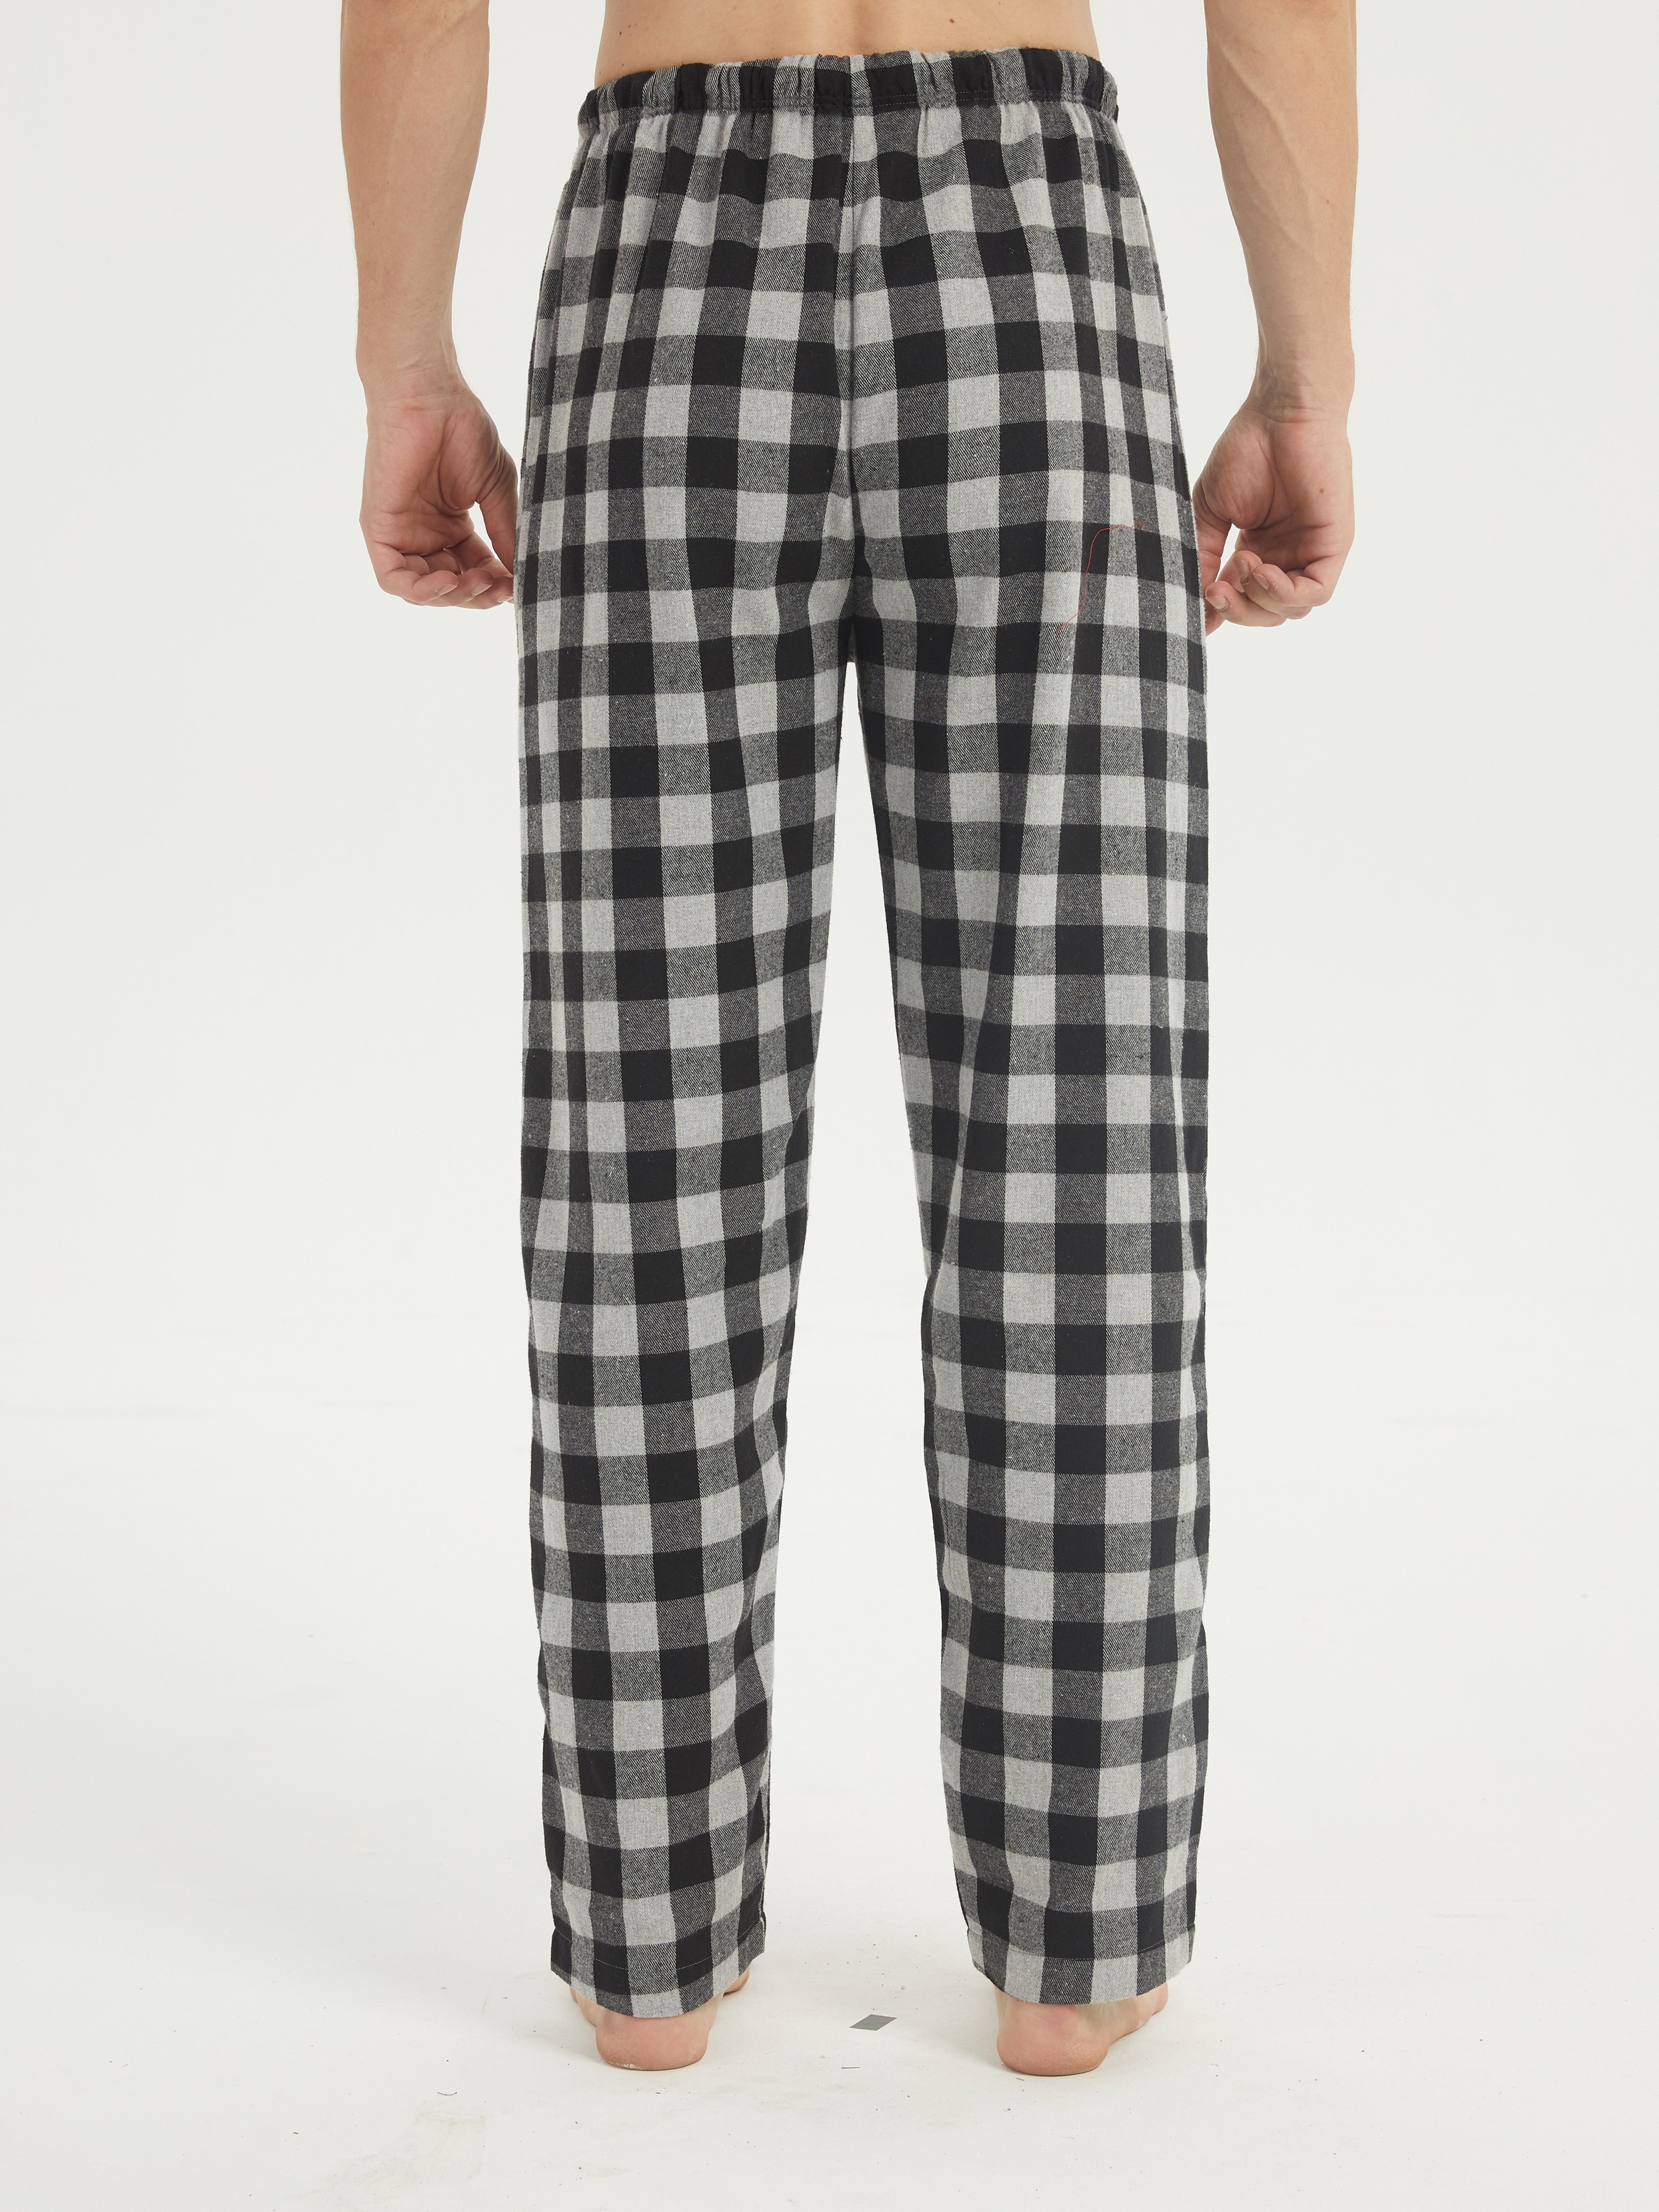 Men's Flannel Pajamas Pants Set Cotton Plaid Pjs Bottoms - Temu Italy